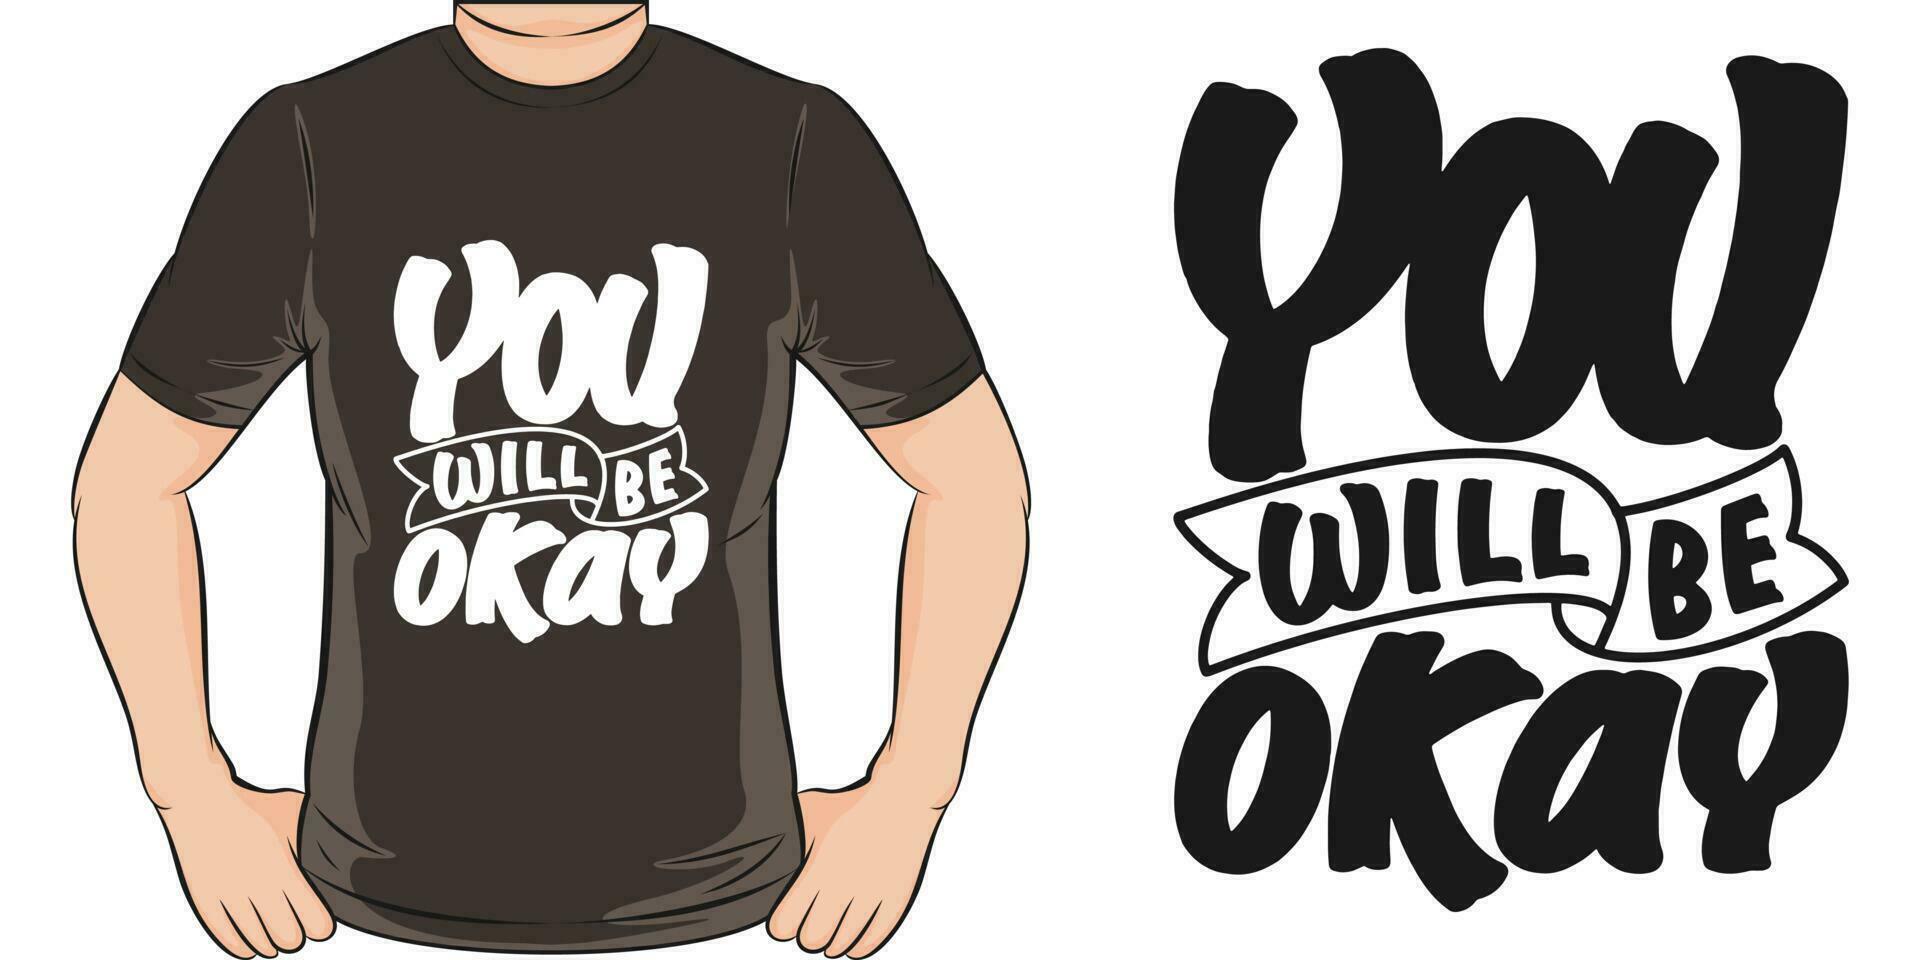 u zullen worden Oke, motiverende citaat t-shirt ontwerp. vector